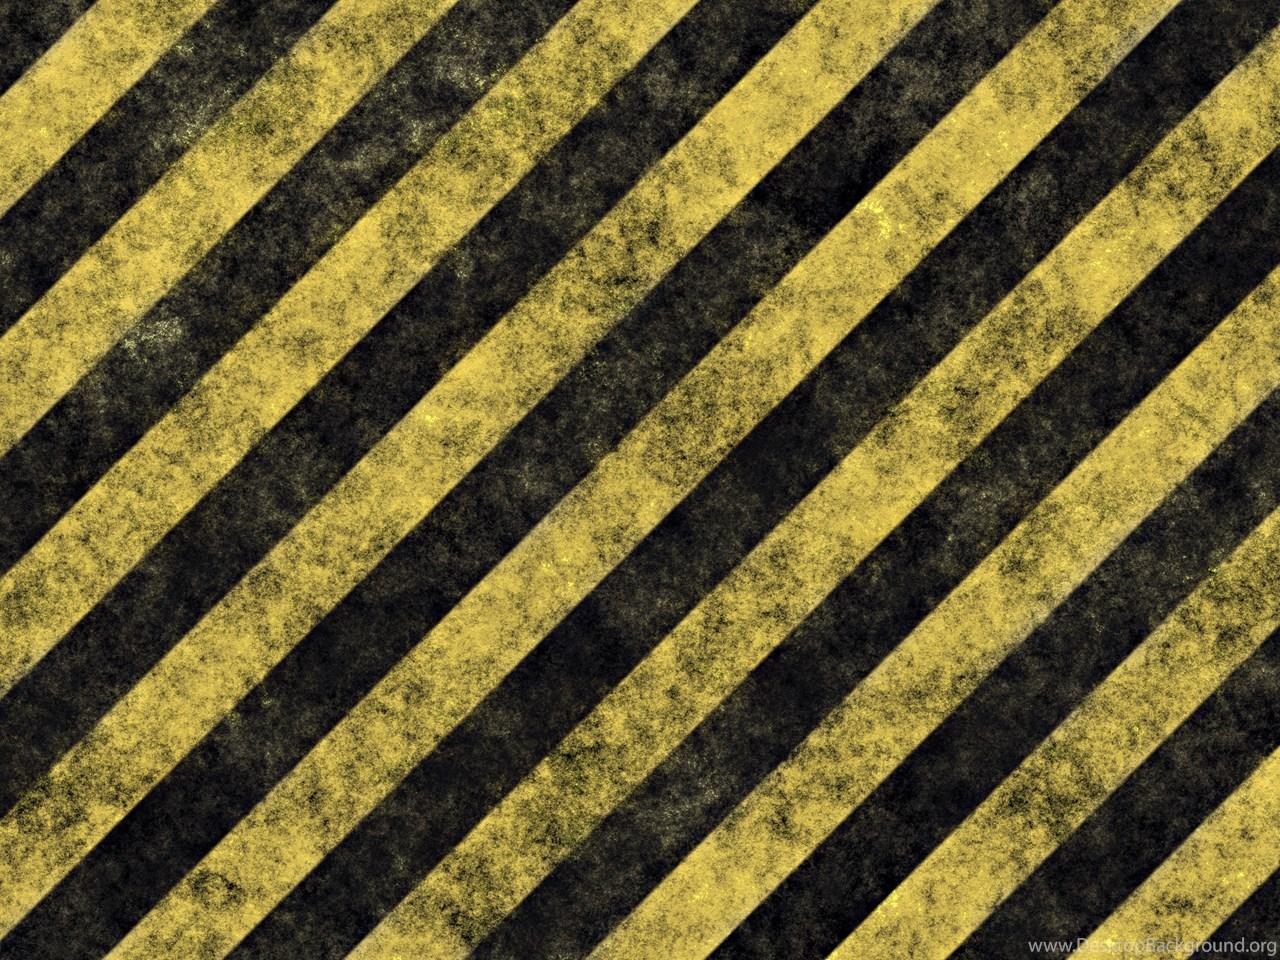 Hazard Stripes Wallpaper Or Background Image Desktop Background